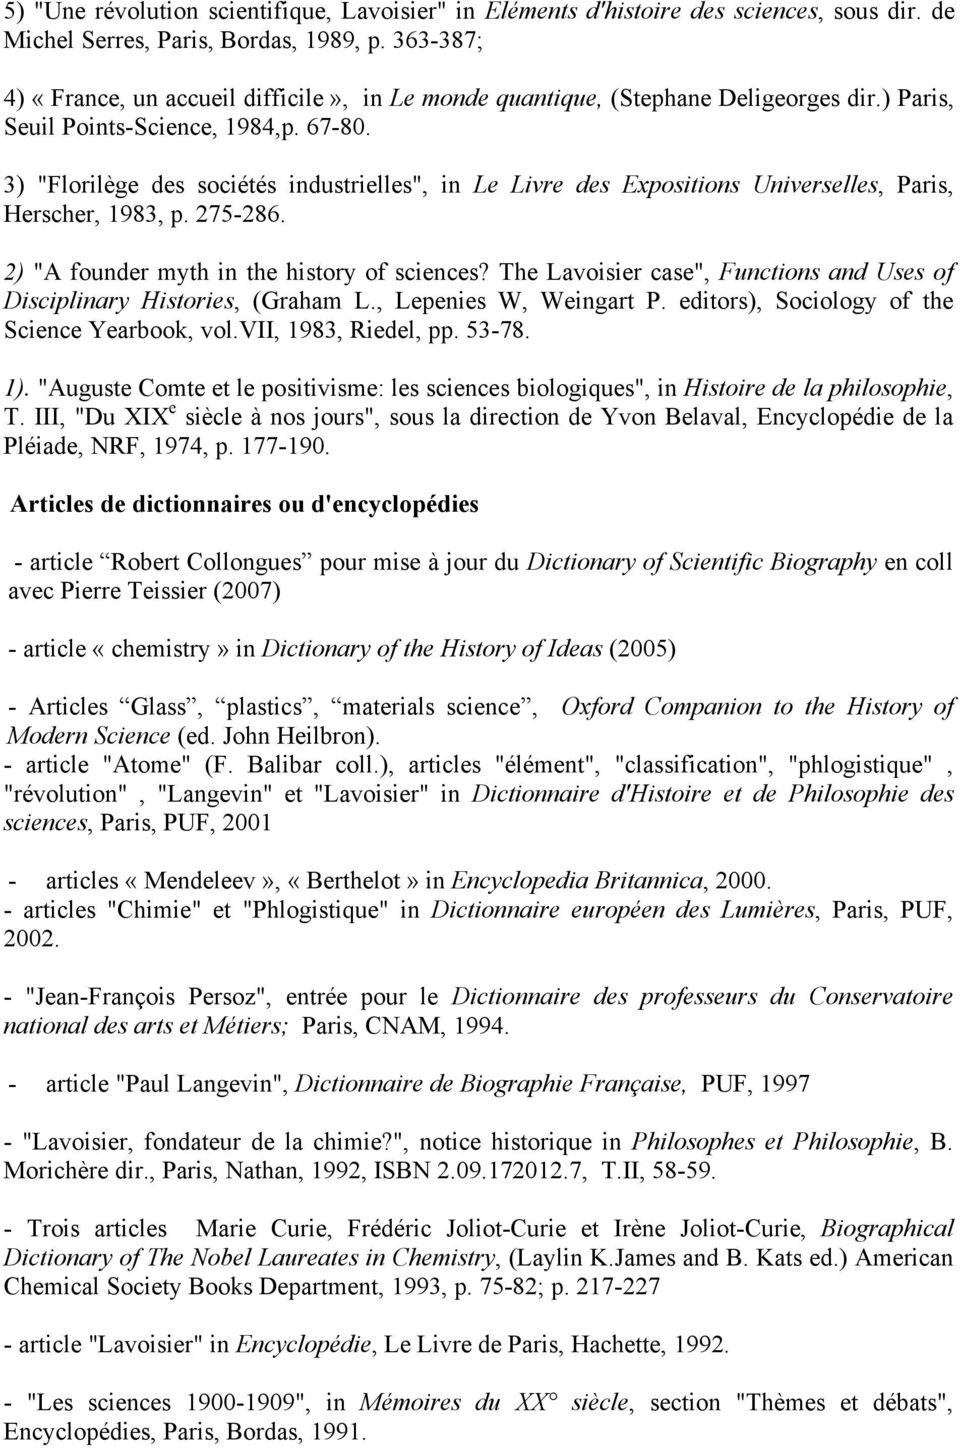 3) "Florilège des sociétés industrielles", in Le Livre des Expositions Universelles, Paris, Herscher, 1983, p. 275-286. 2) "A founder myth in the history of sciences?